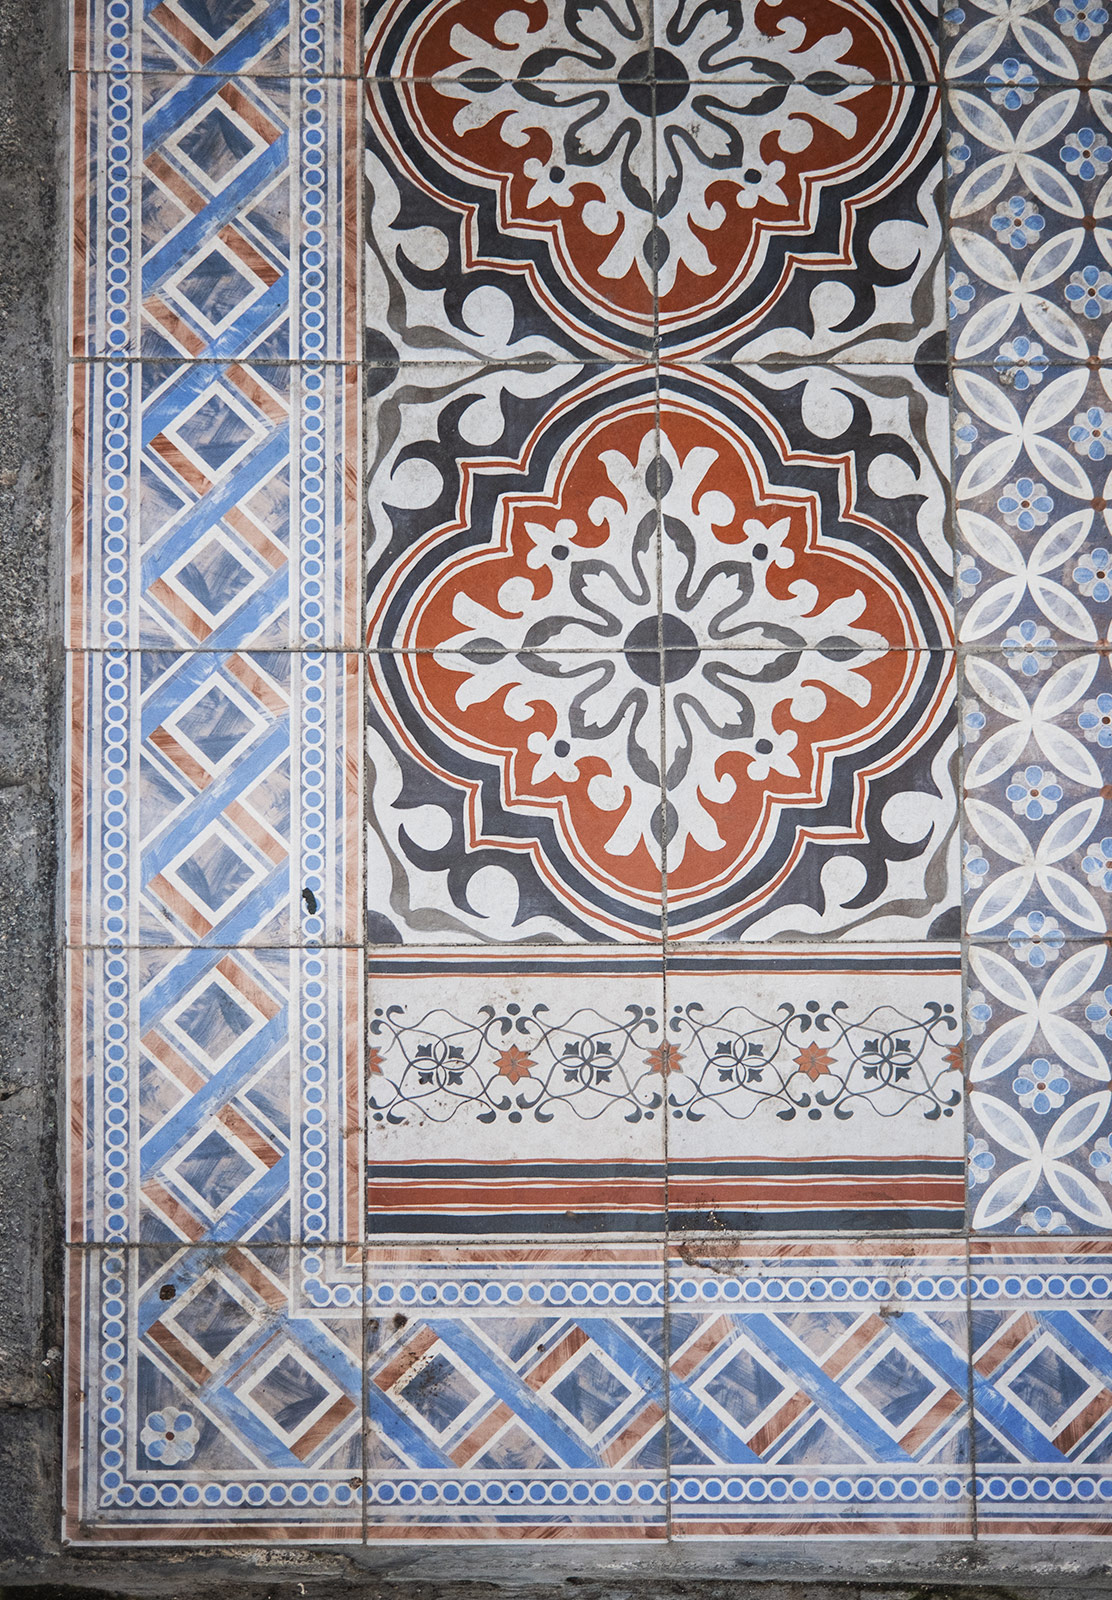 Decorative tile arrangement